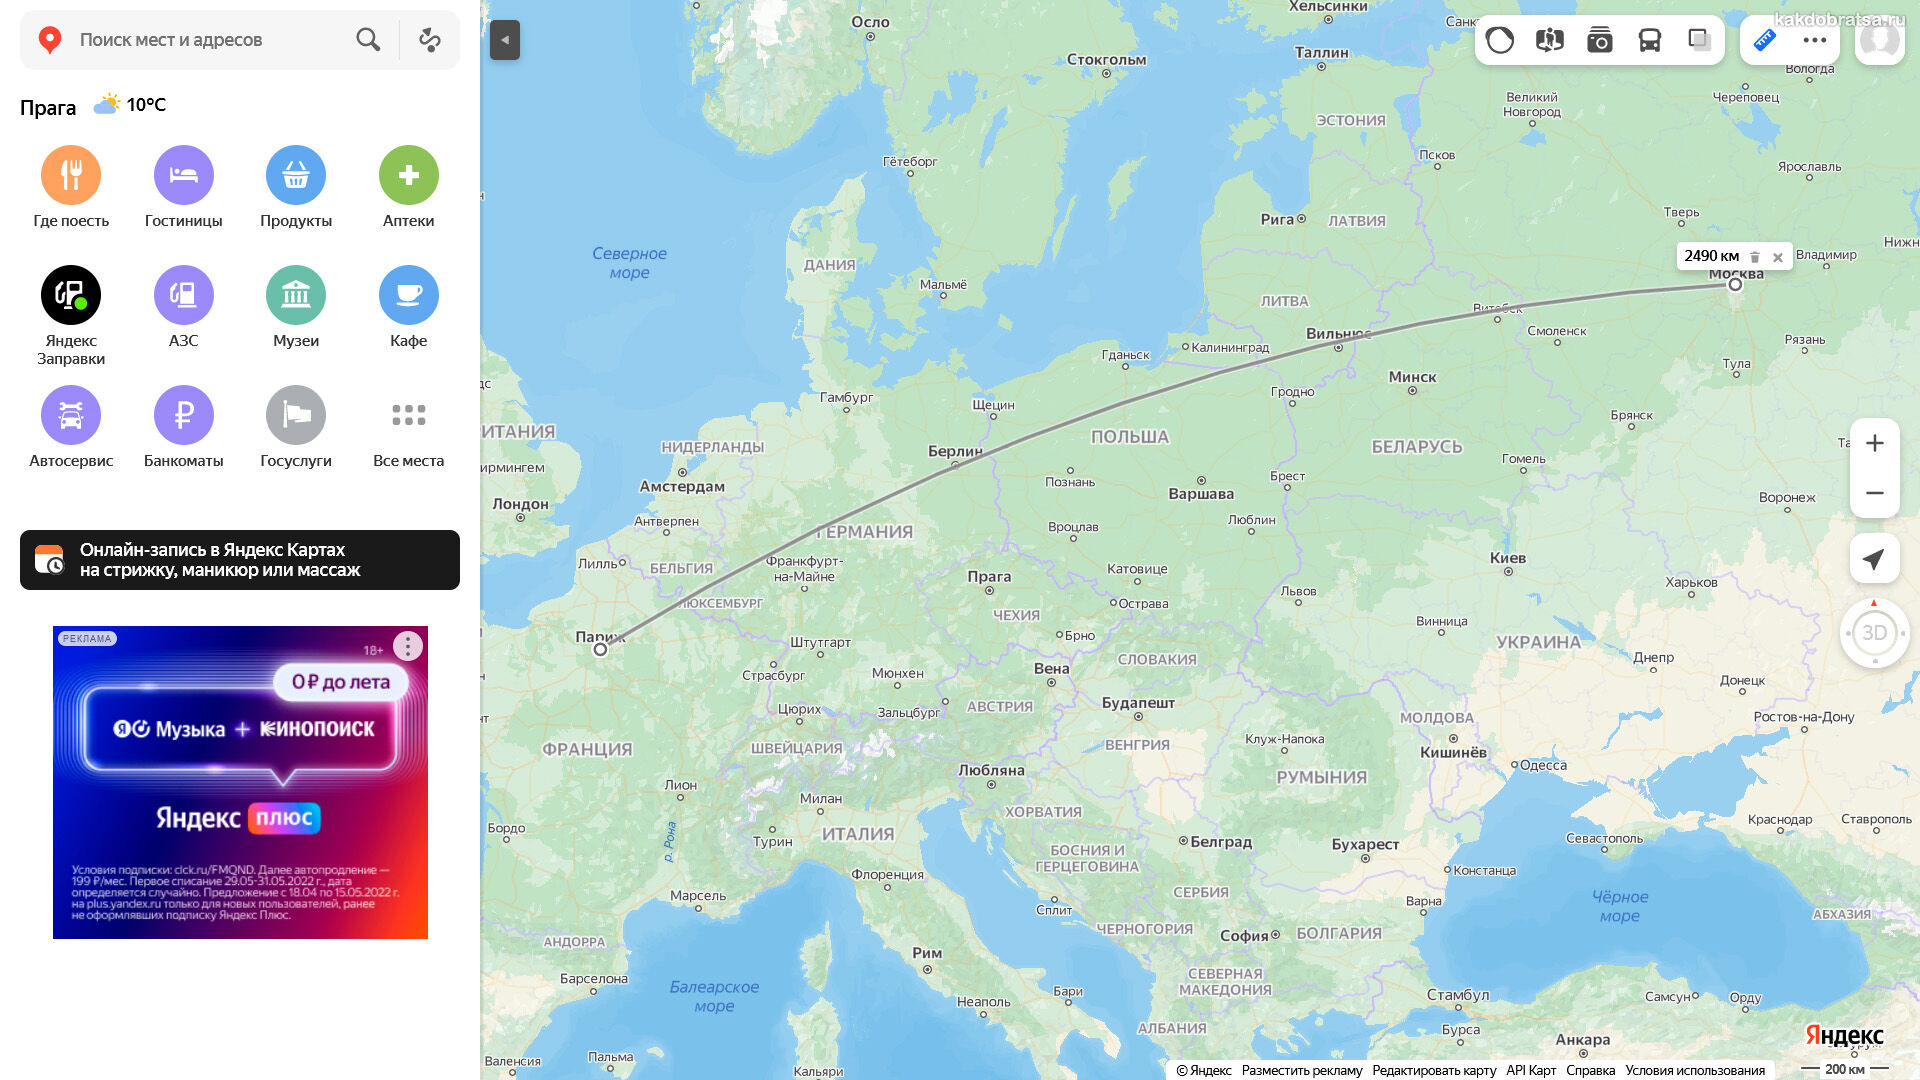 Расстояние между Москвой и Парижем по карте